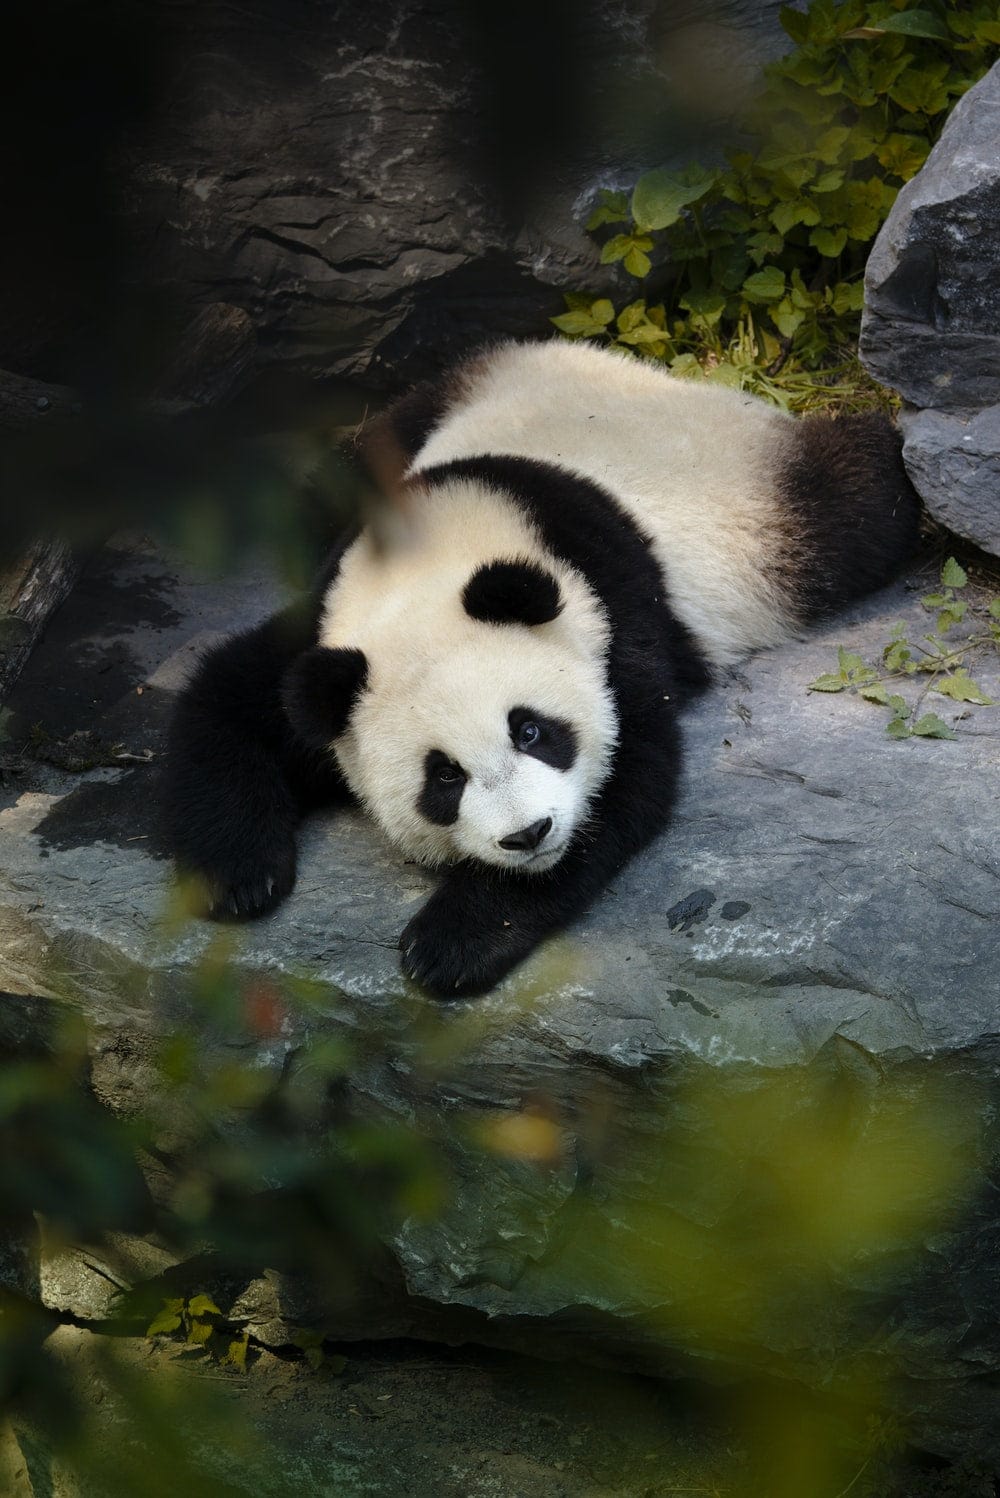 Cross Stitch | Panda - Panda On Water During Daytime - Cross Stitched